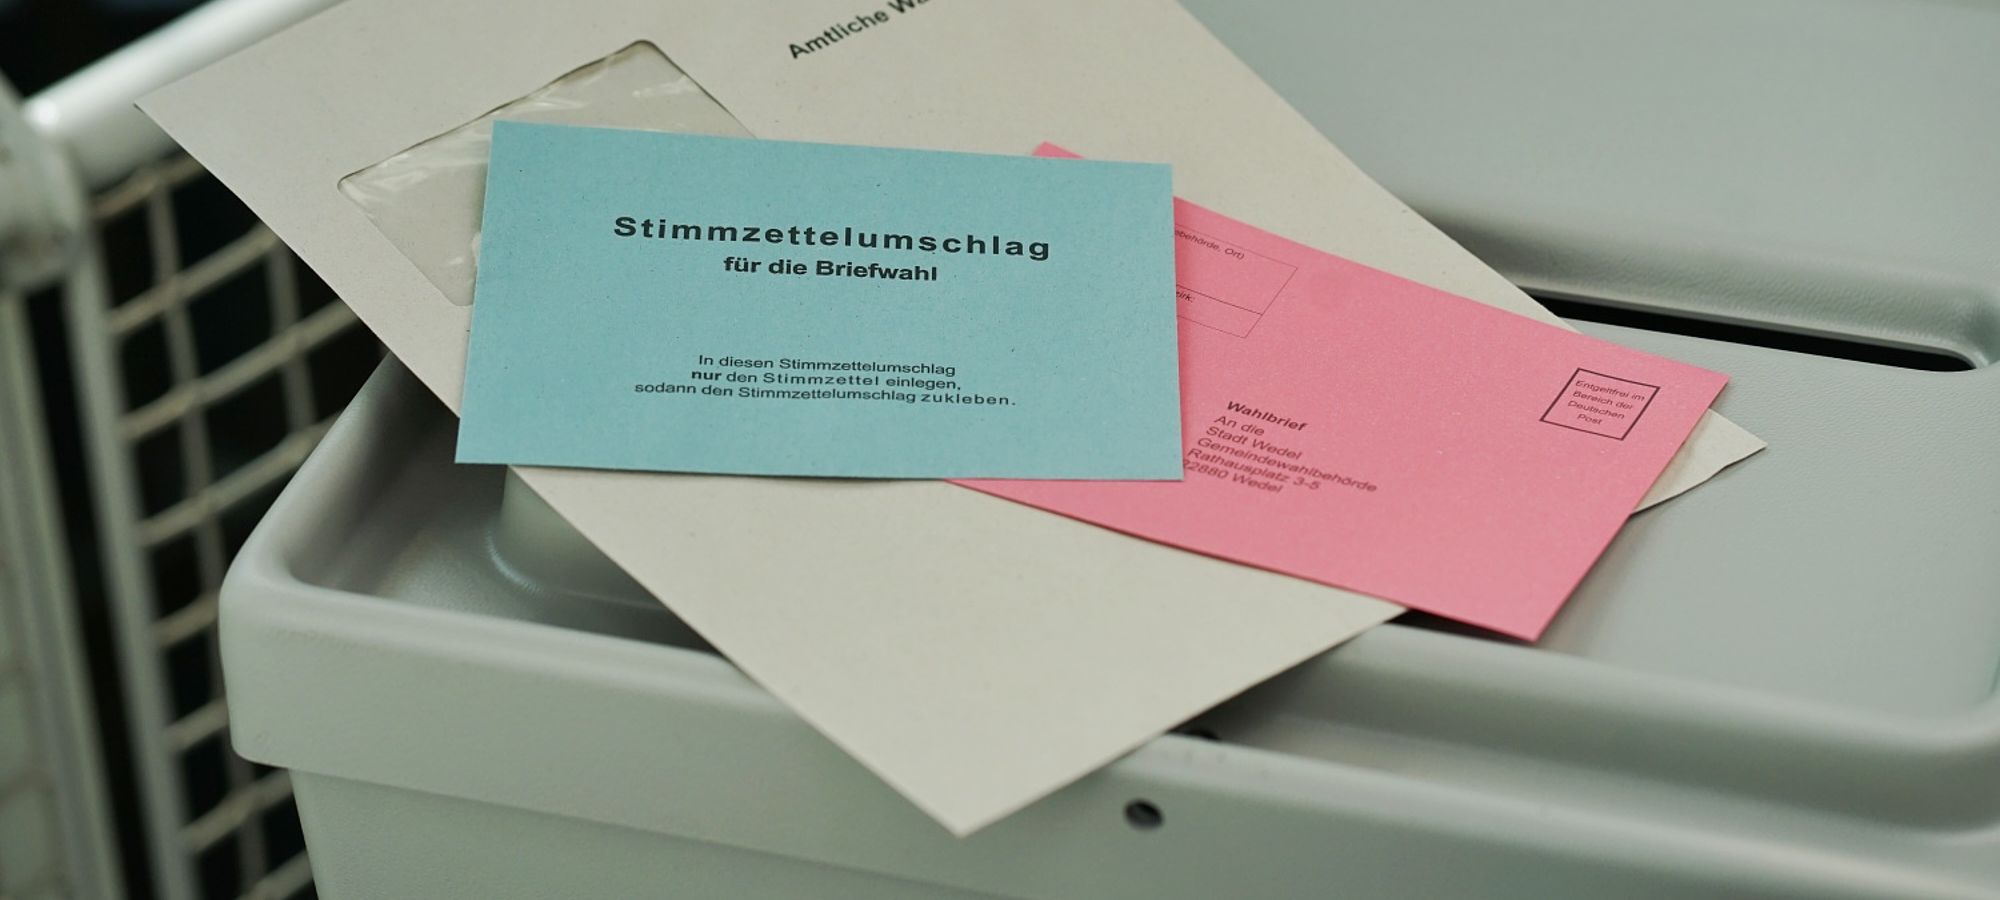 Gemeinde- und Kreiswahl am 14. Mai: Briefwahl ab 4. April möglich.